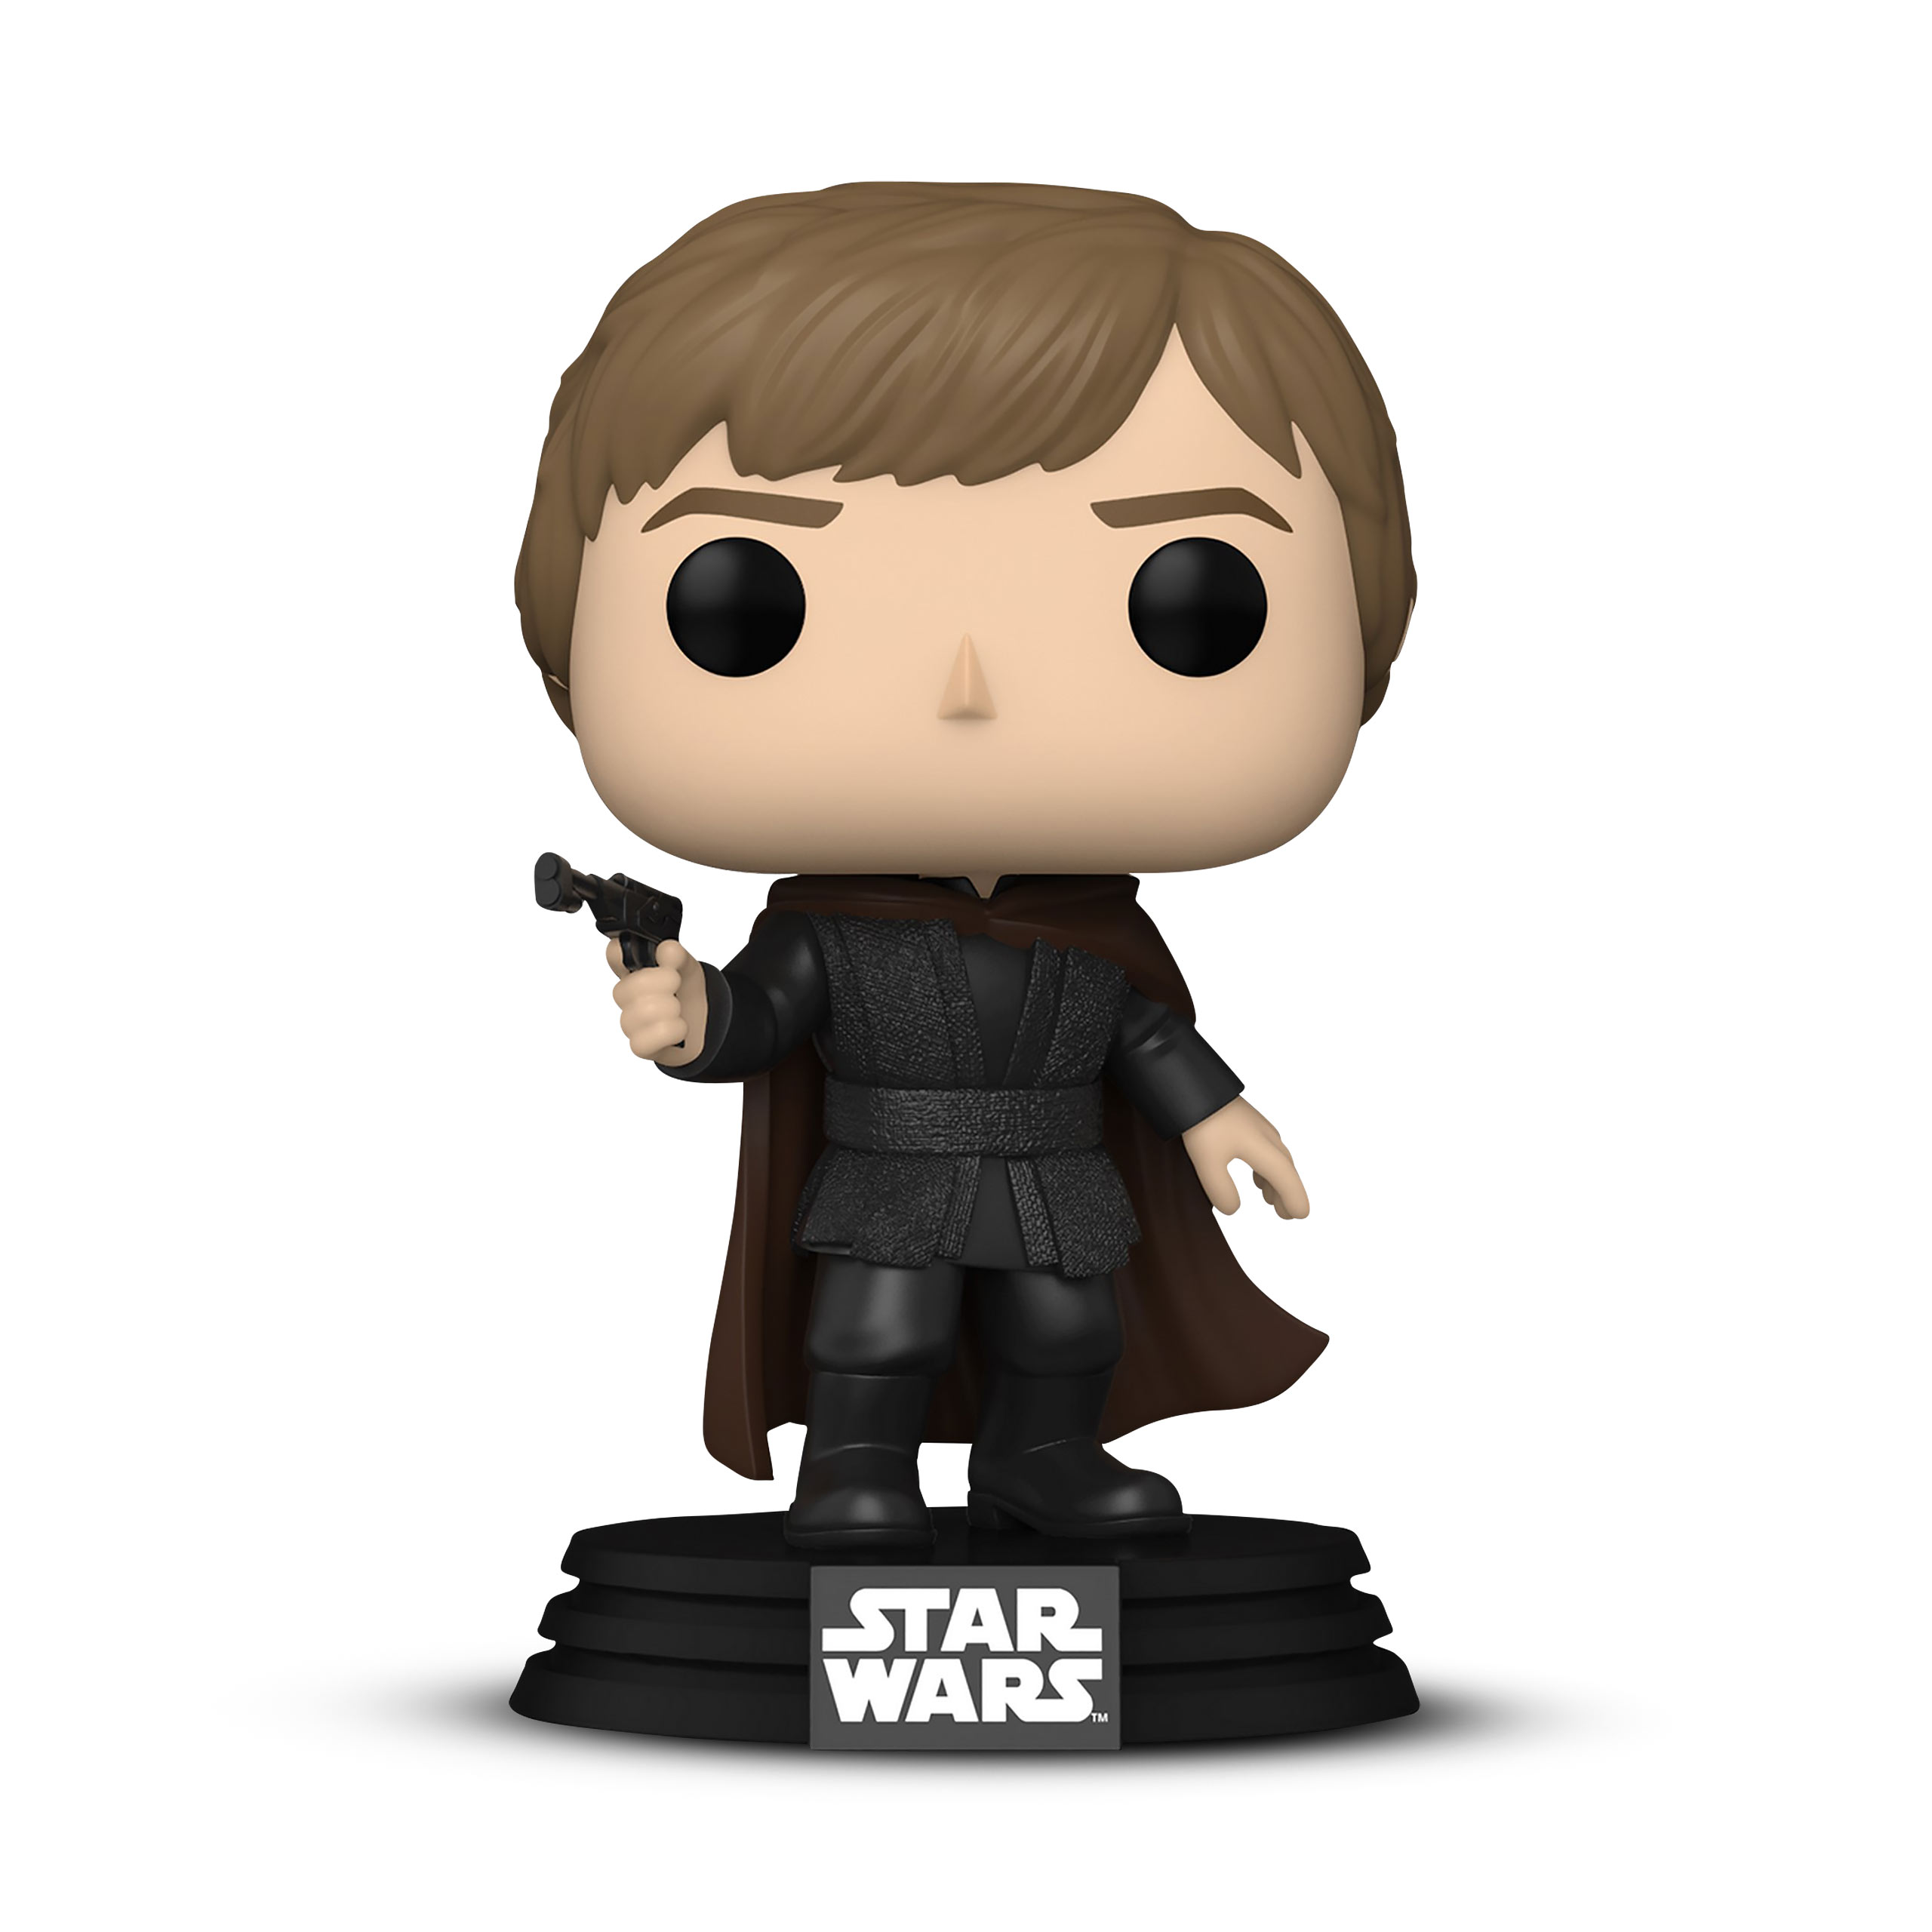 Star Wars - Luke Skywalker 40th Anniversary Funko Pop Bobblehead Figure